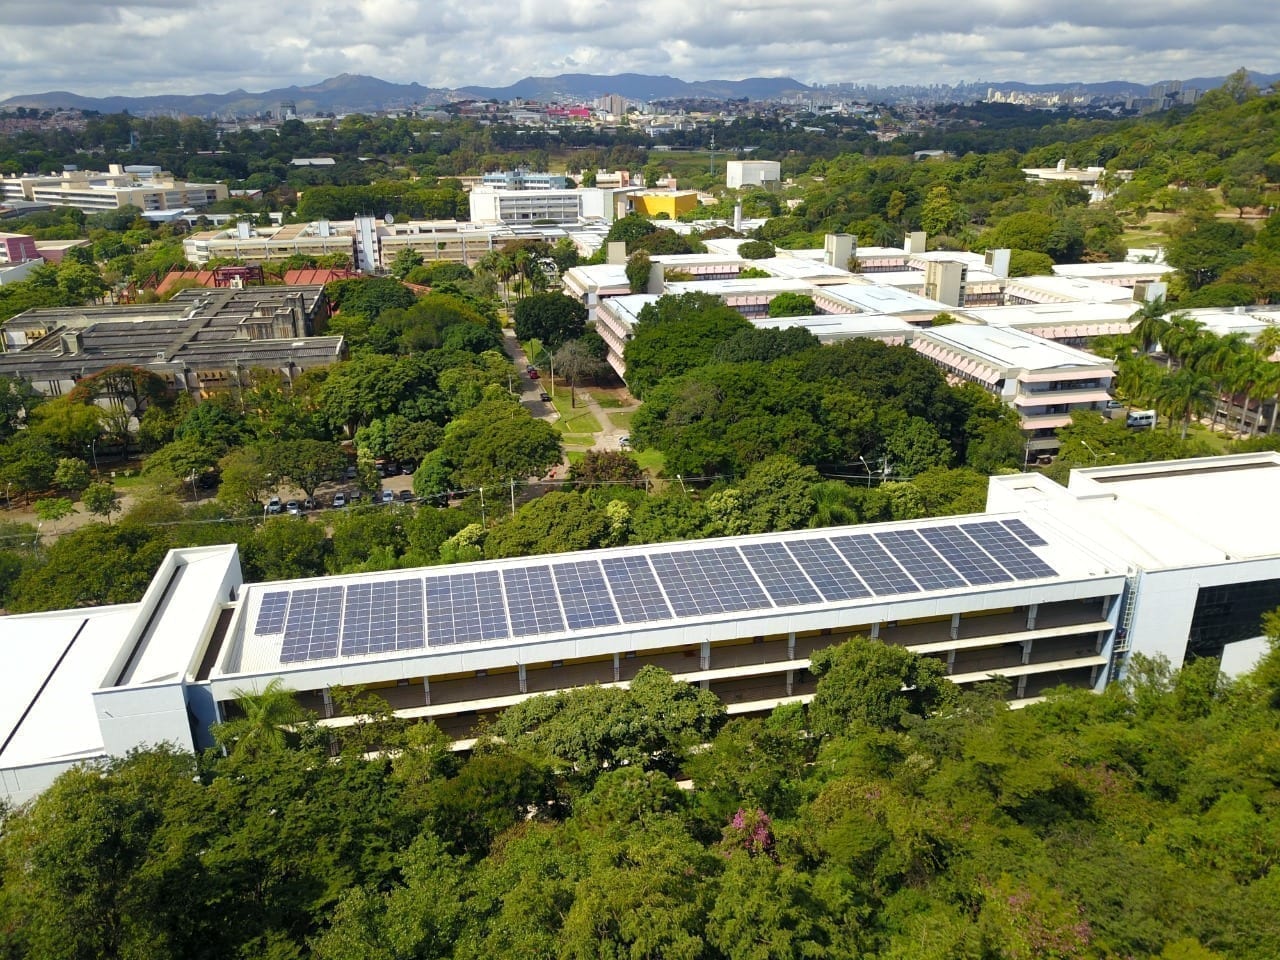 Universidades federais de Minas instalam usinas fotovoltaicas para abastecer campi. Na imagem: Foto aérea de placas fotovoltaicas sobre telhado na Usina Fotovoltaica em prédios do CAD, no campus da UFMG (Foto: Divulgação Onergy Solar)